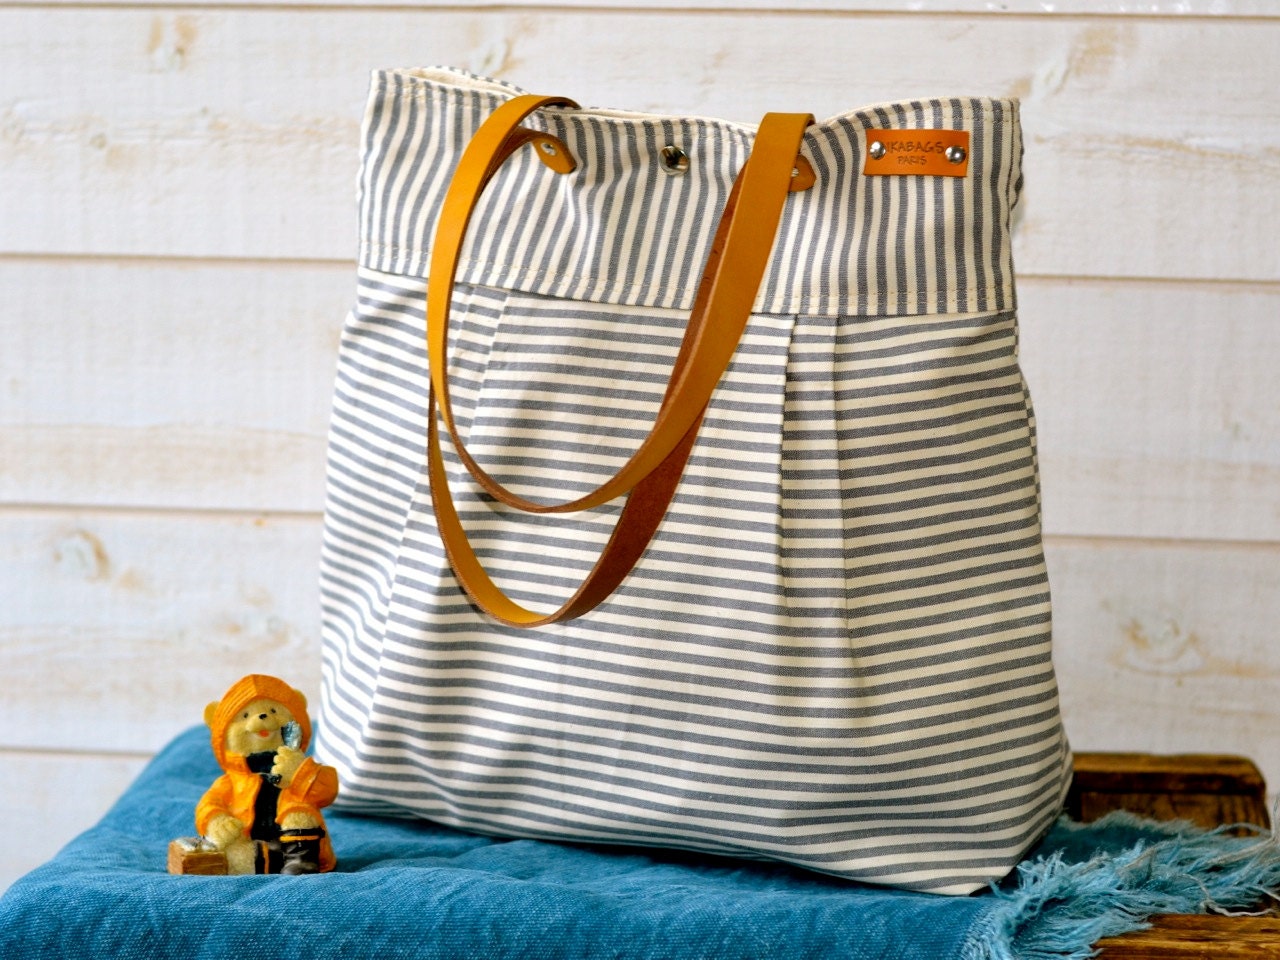 Water proof Diaper bag / Messenger bag / Nautical tote / Beach